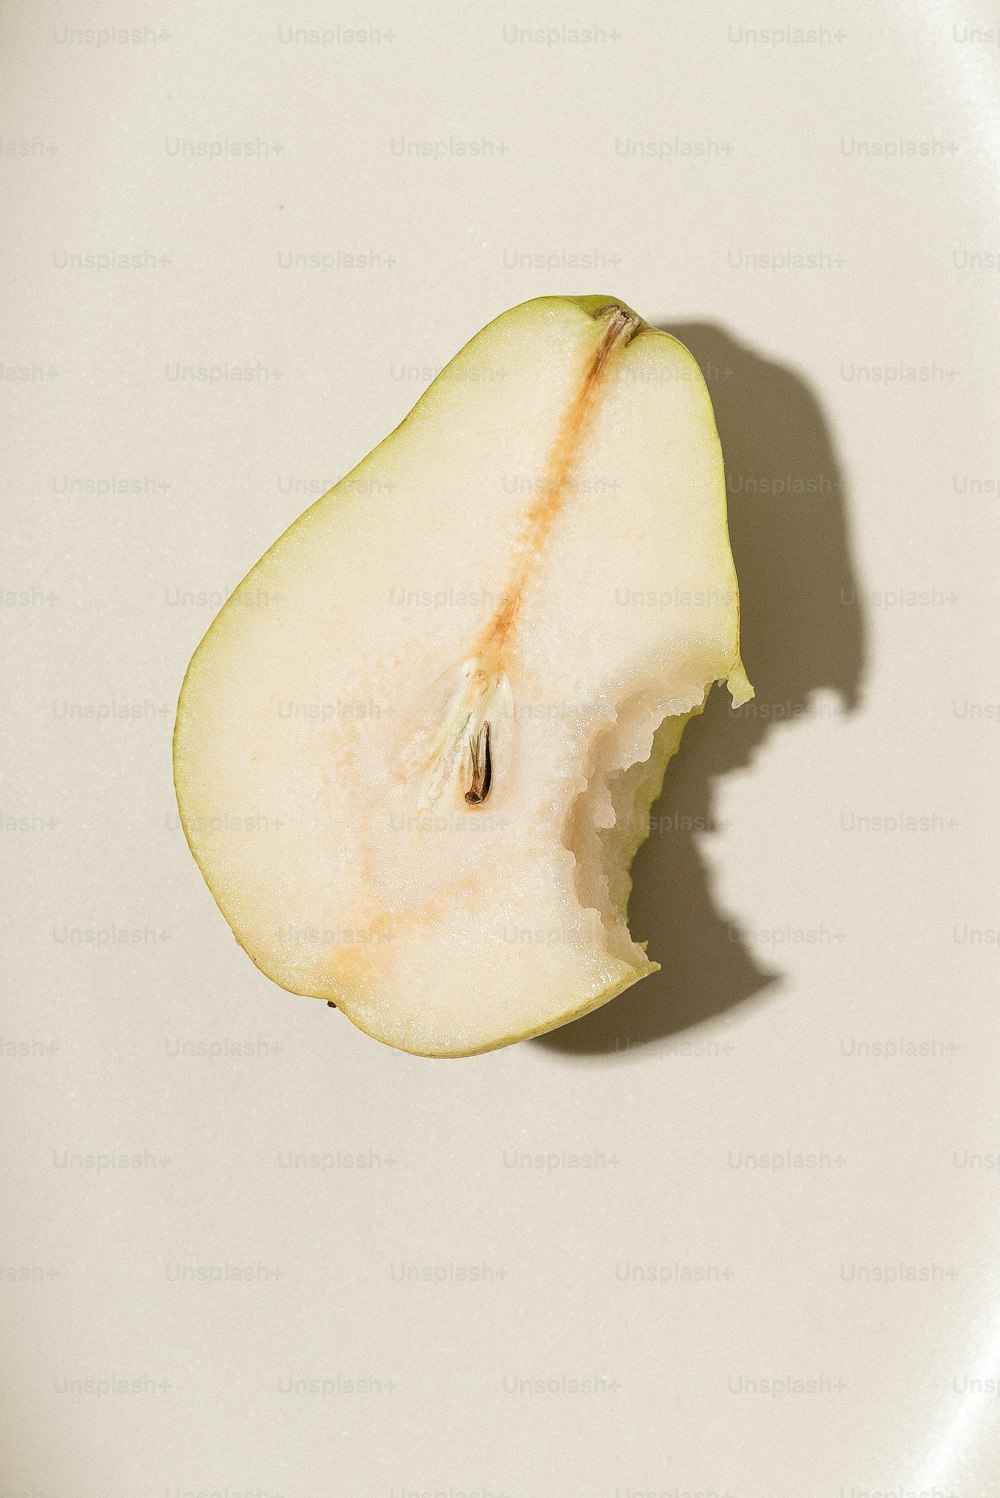 Una manzana a medio comer encima de un plato blanco